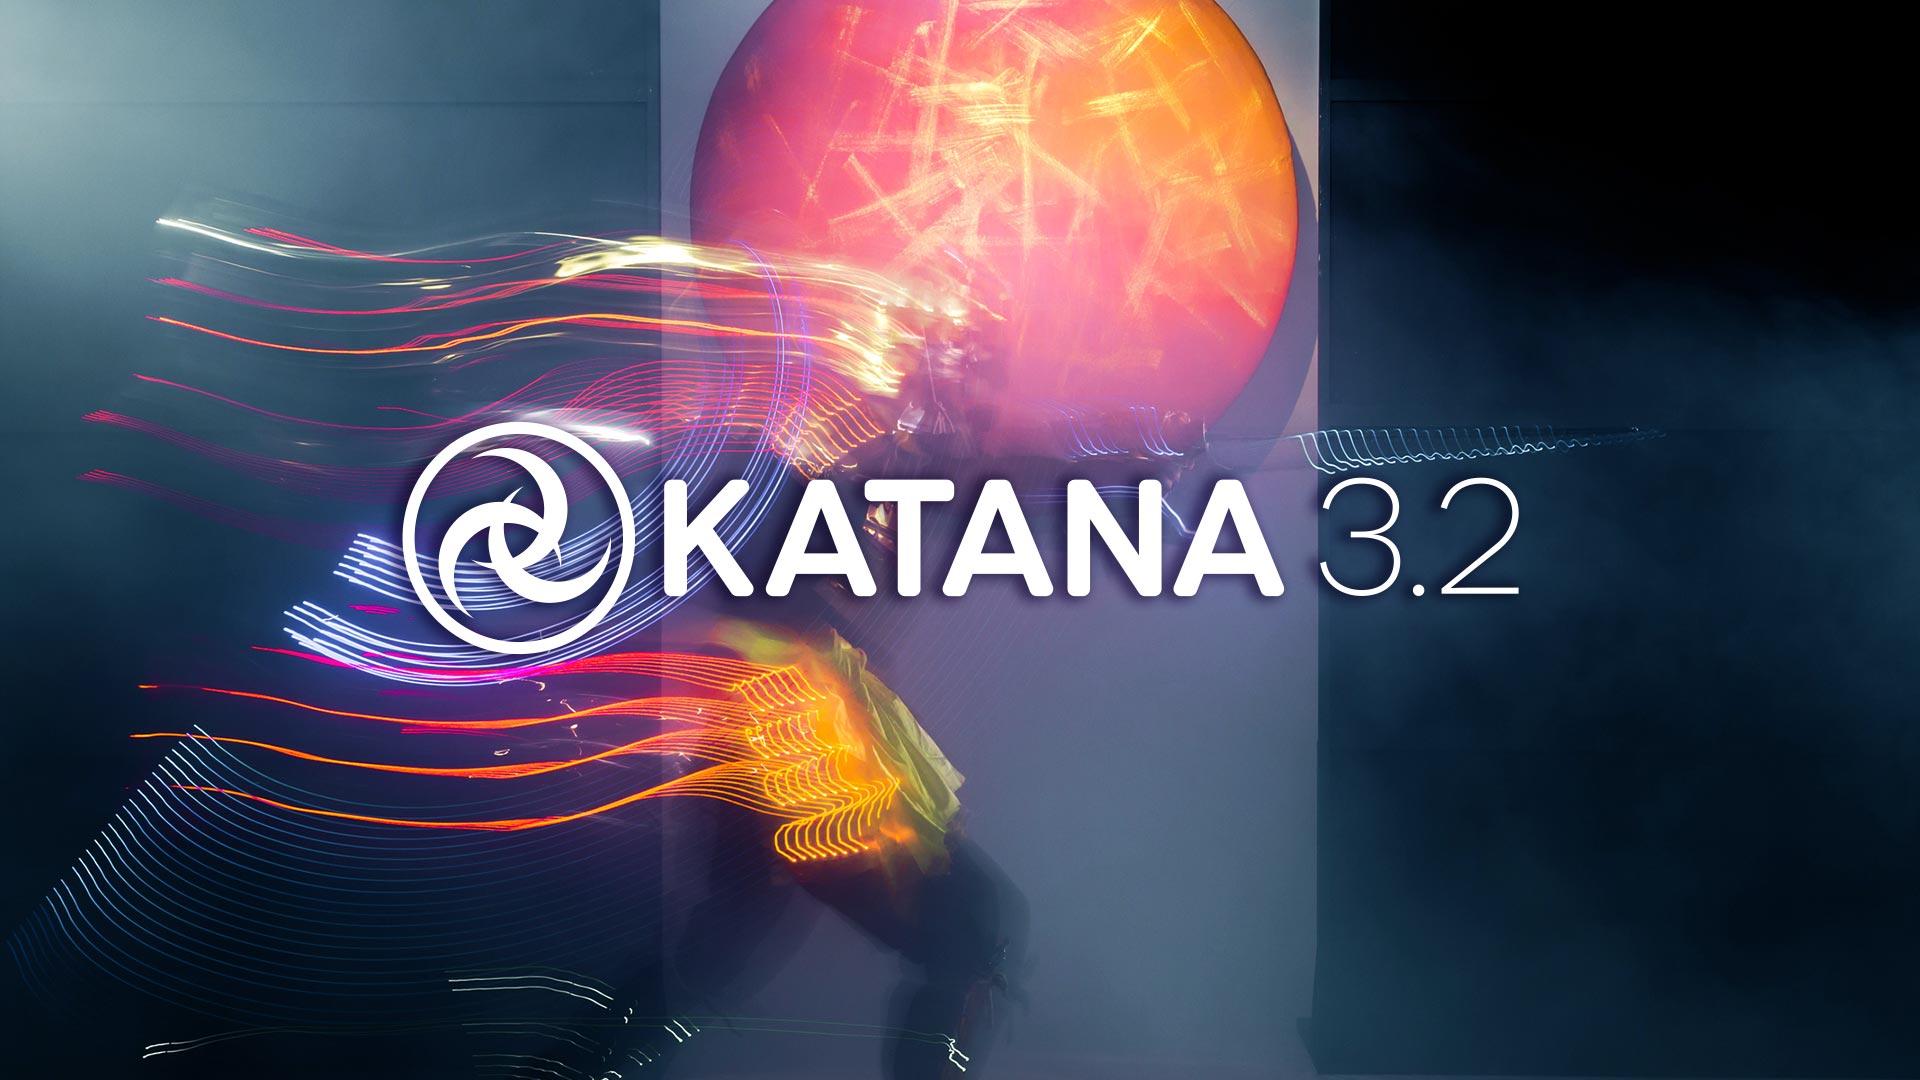 Katana release